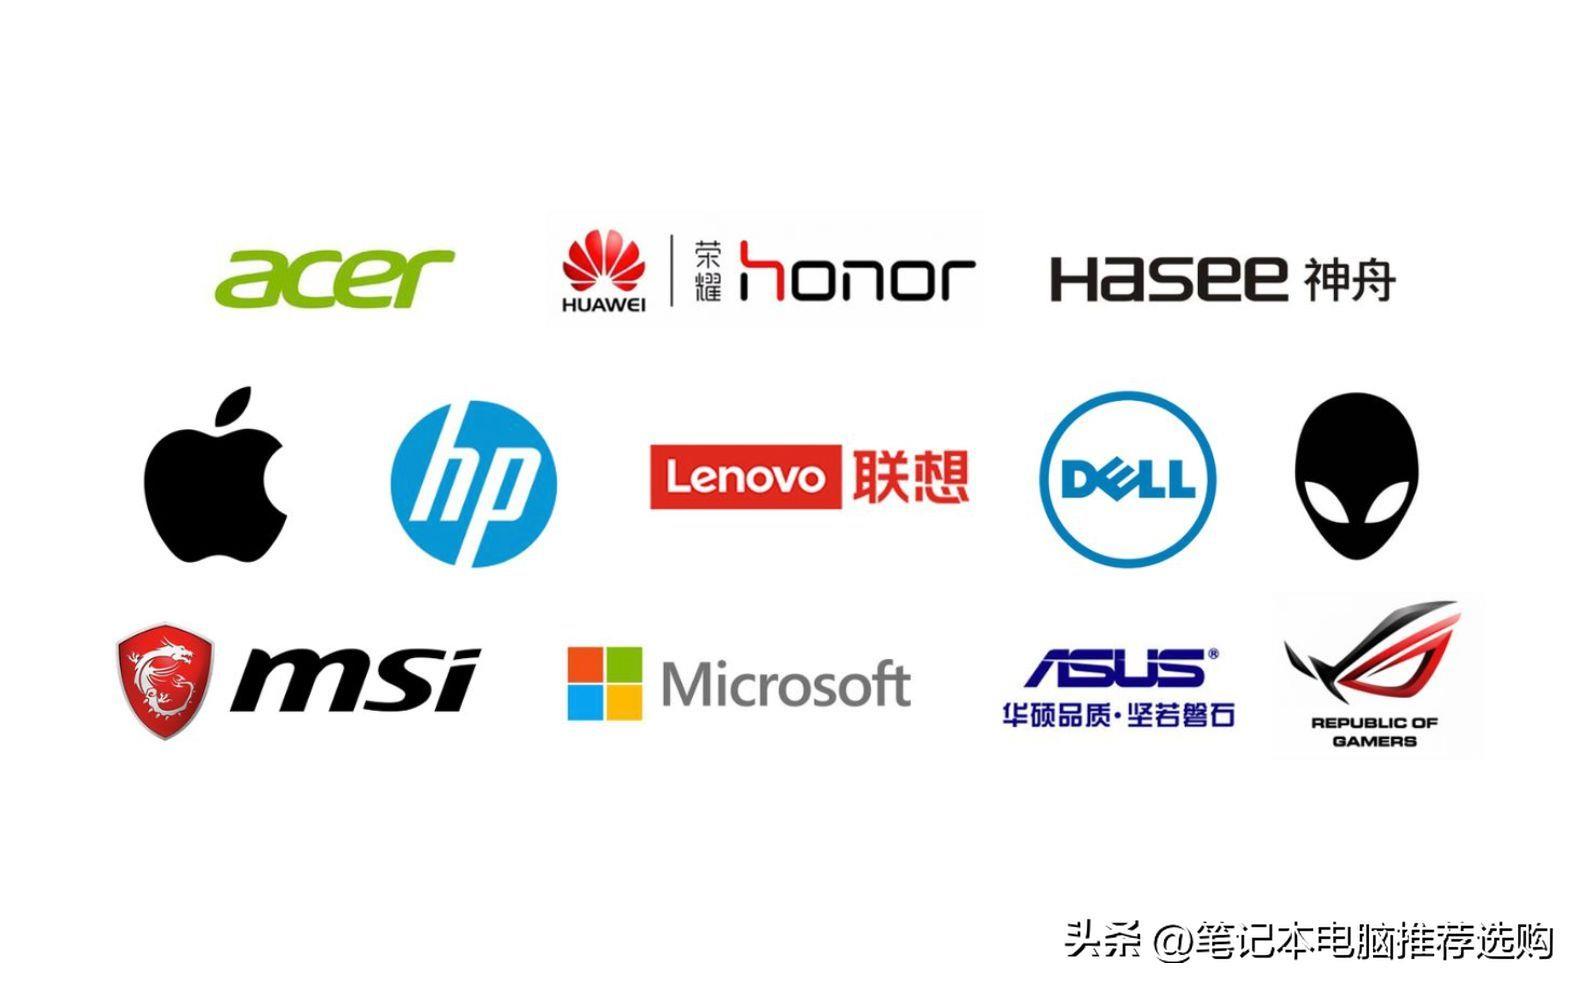 全球十大笔记本电脑品牌排名(全球笔记本销量排行榜)